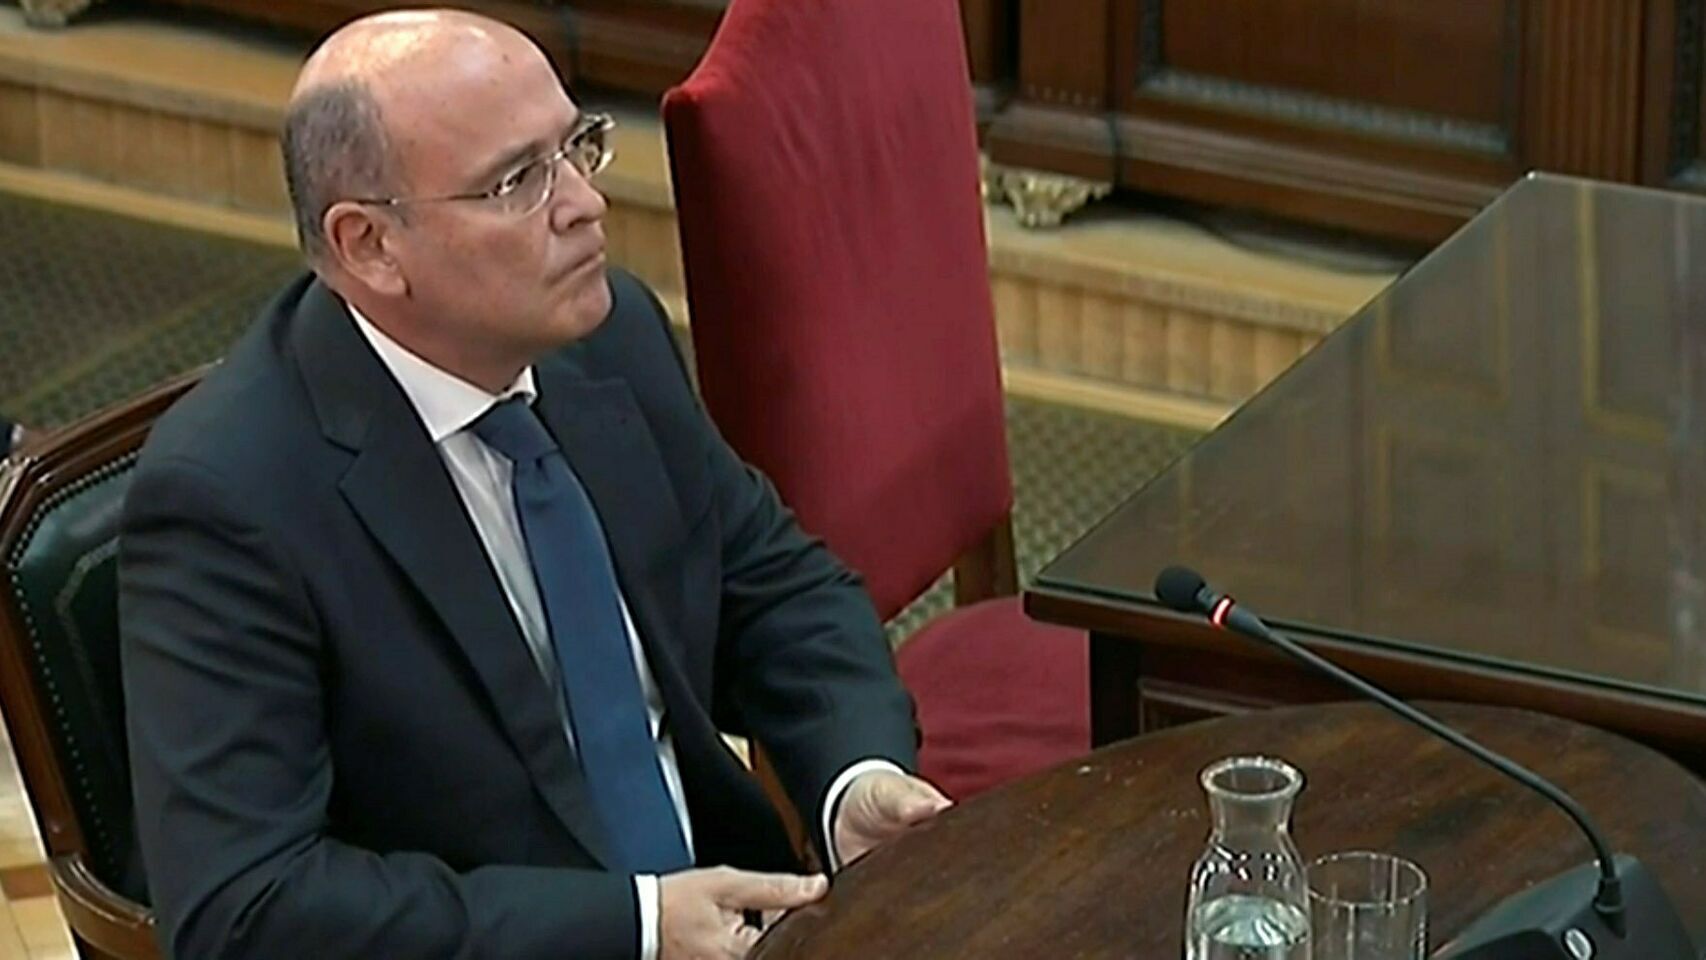 El coronel Pérez de los Cobos, durante su declaración como testigo en el juicio del 'procés'./